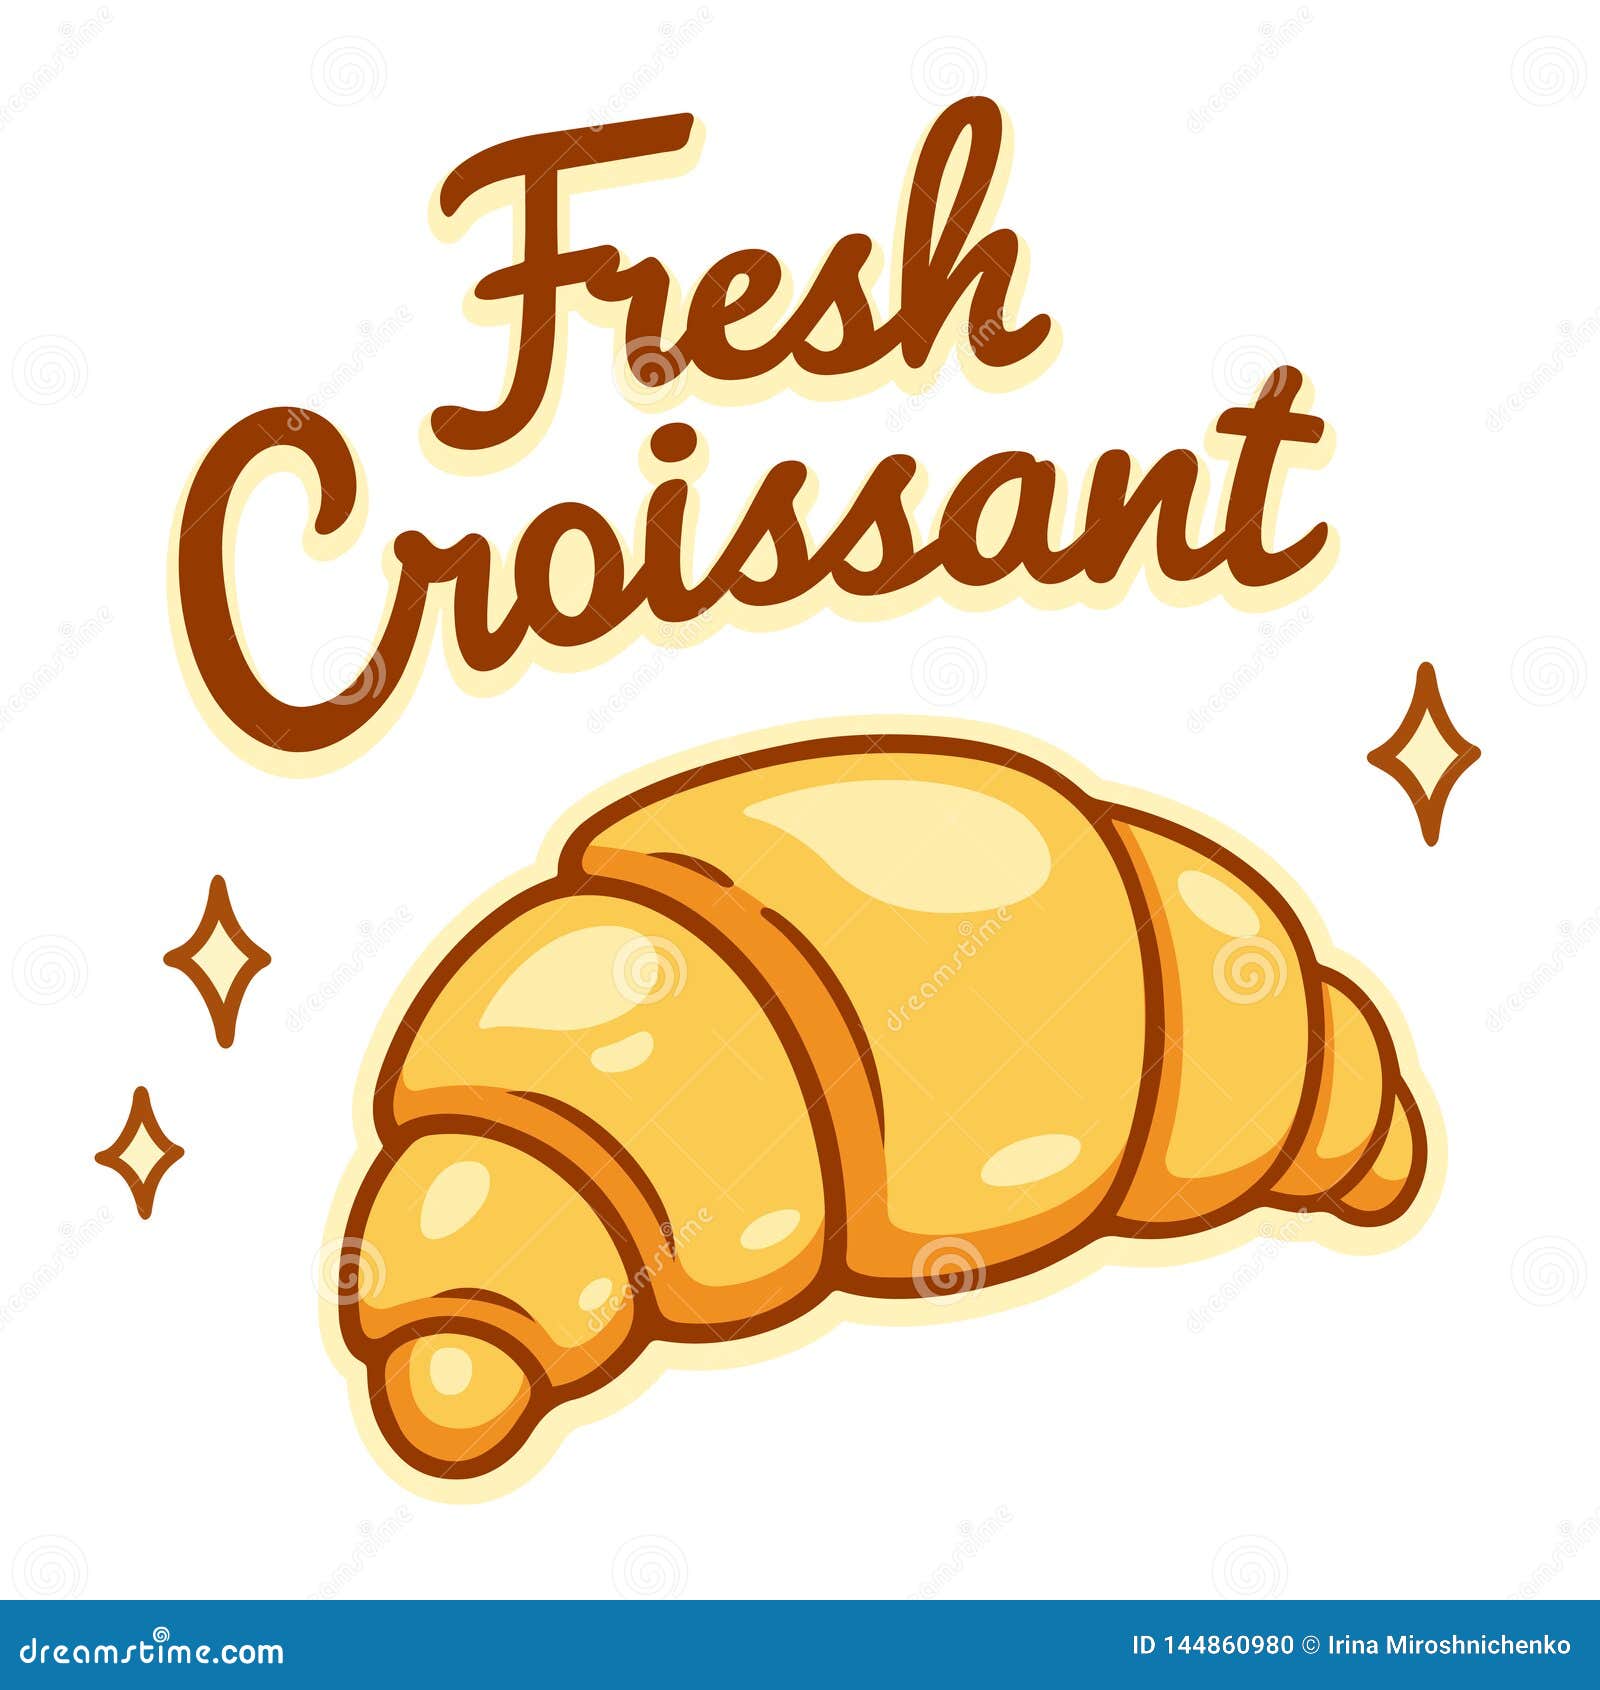 clipart caf�� croissant - photo #24